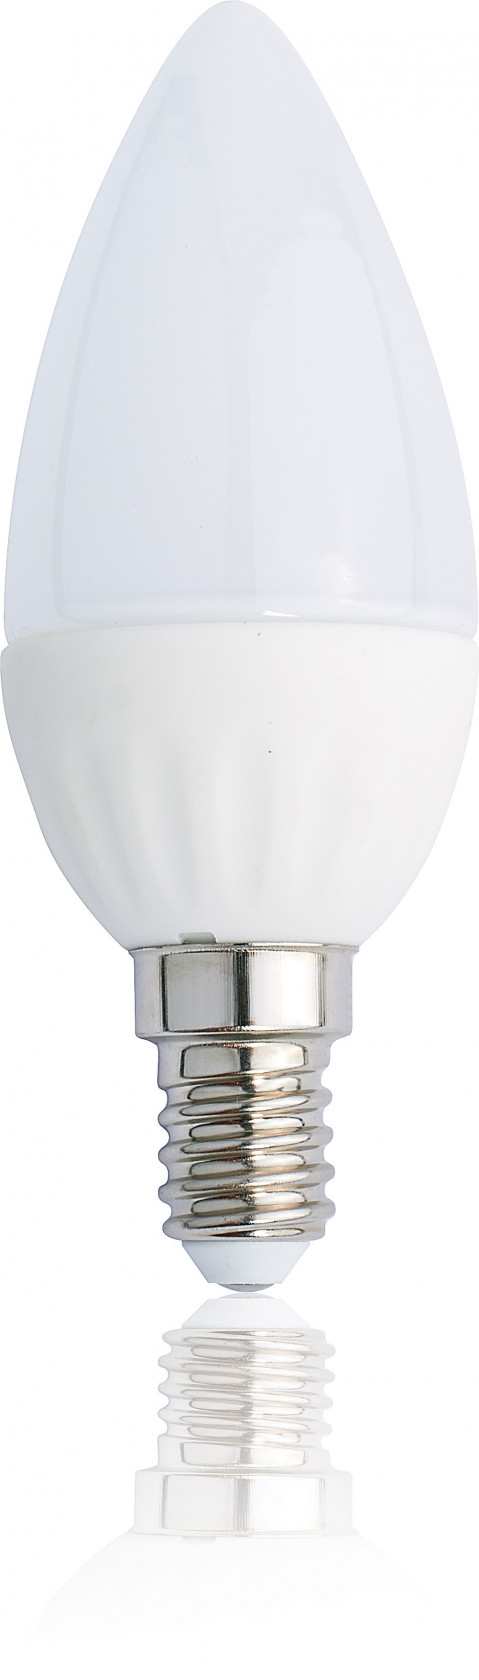 Esolite - LED žárovka svíčka CANDLE E14,SET 2 ks,3W,230V,220 lm,220°,30.000hod,3000K teplá bílá,RA≥80